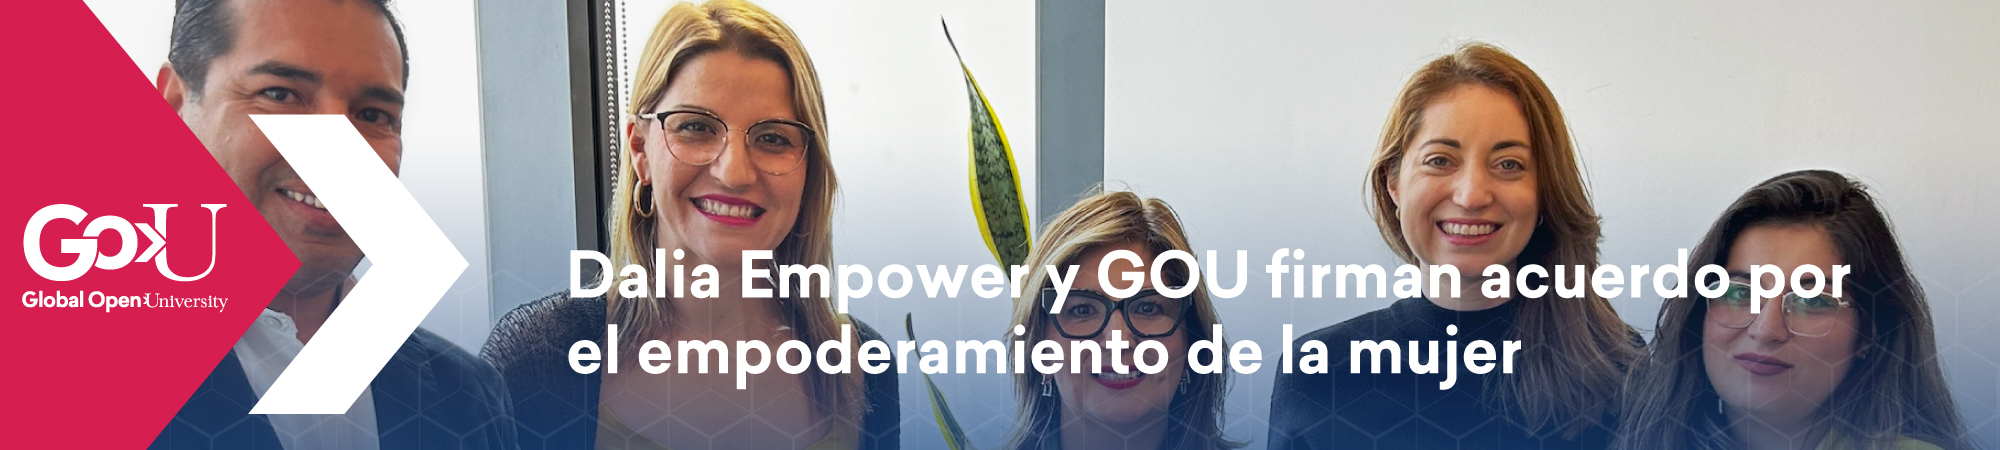 Dalia Empower y GOU firman acuerdo por el empoderamiento de la mujer